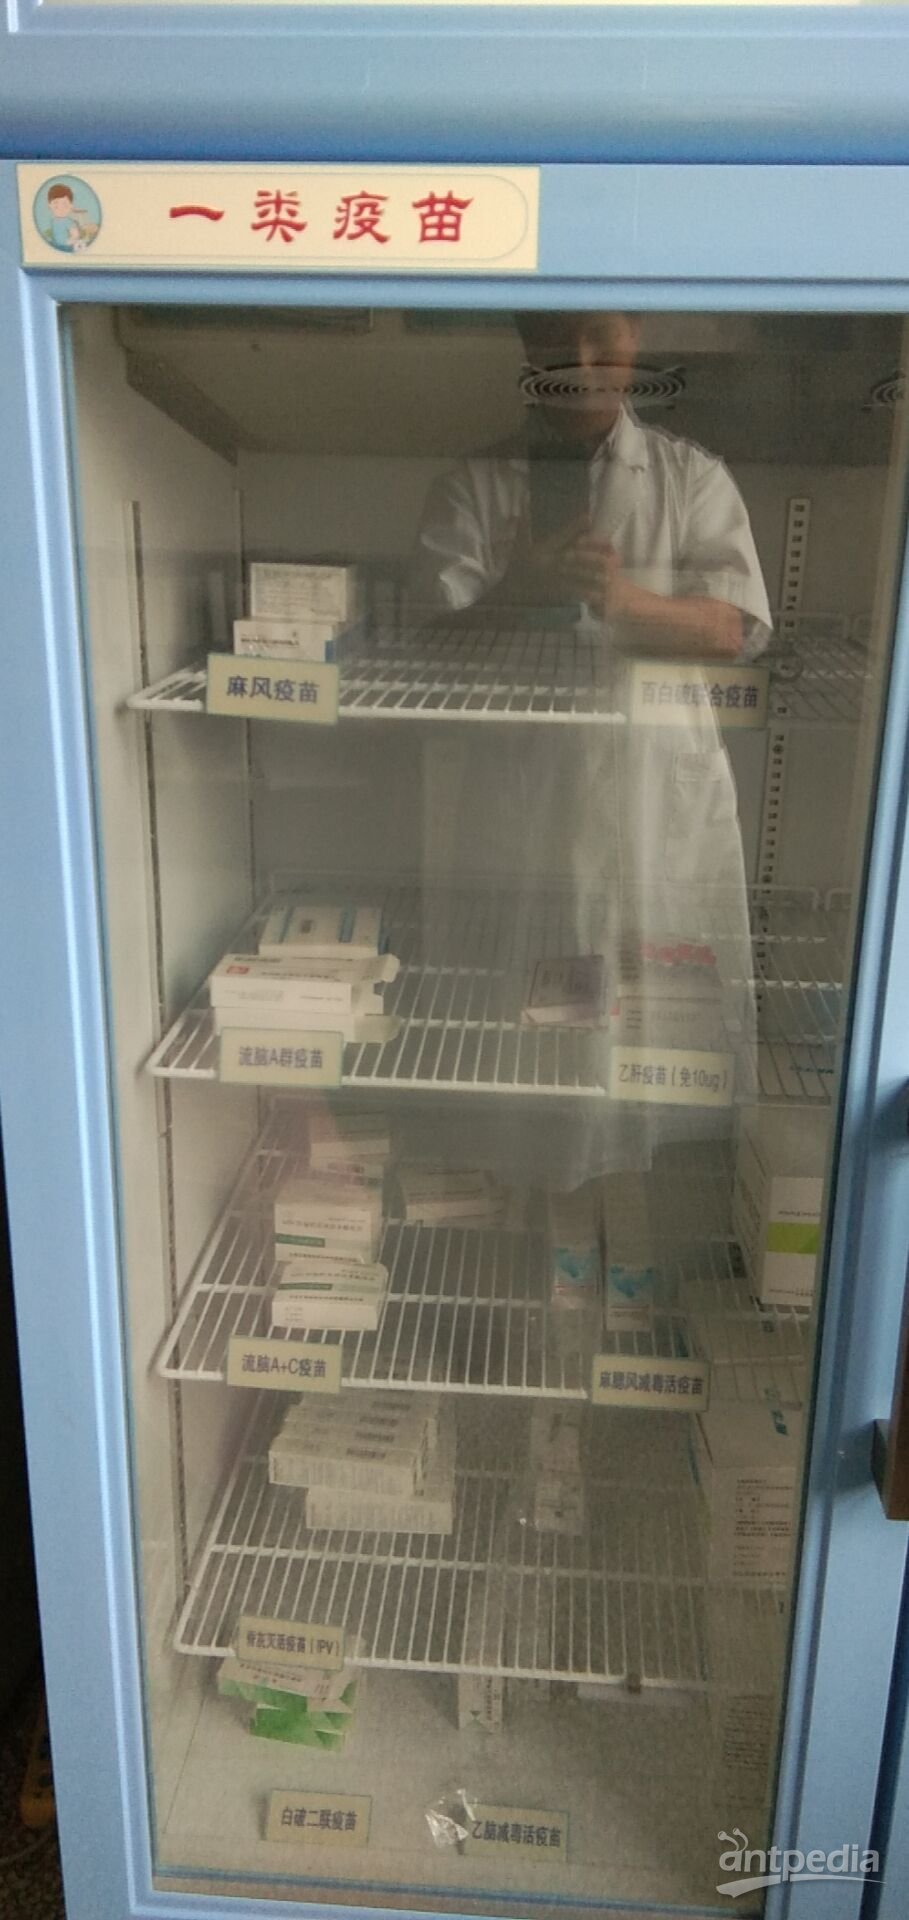 800升疫苗冰箱